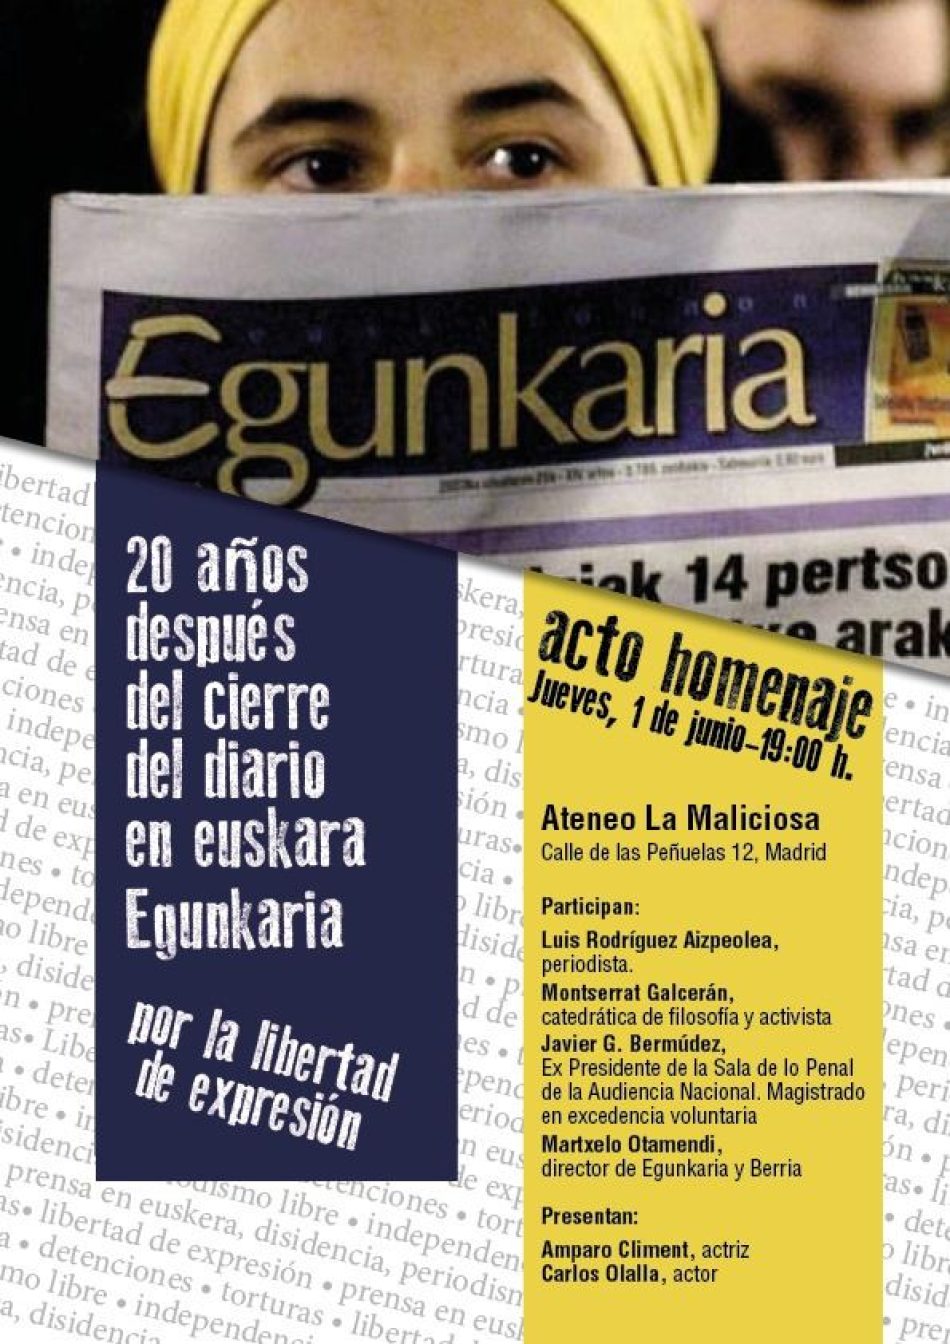 Acto en Madrid en recuerdo del diario vasco Egunkaria y por la libertad de expresión